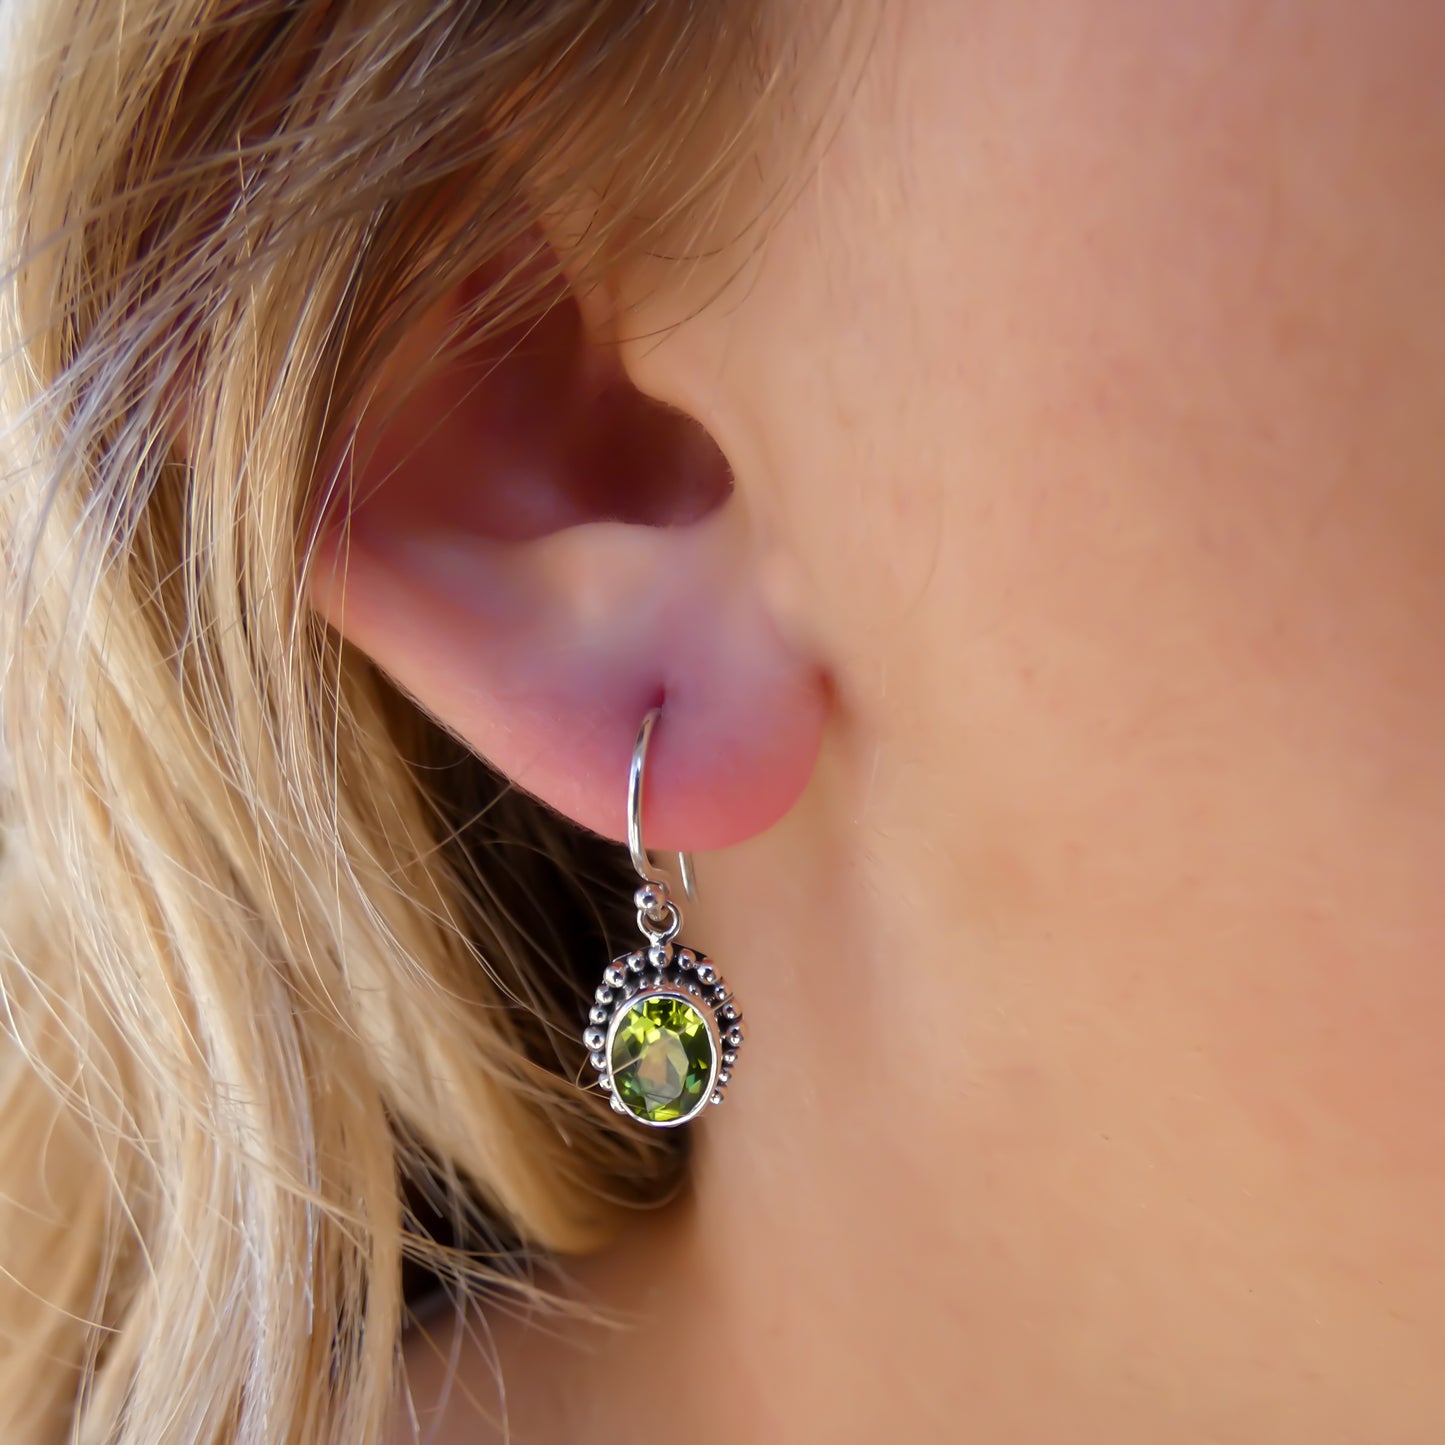 Woman wearing silver earrings with oval peridot gemstones.